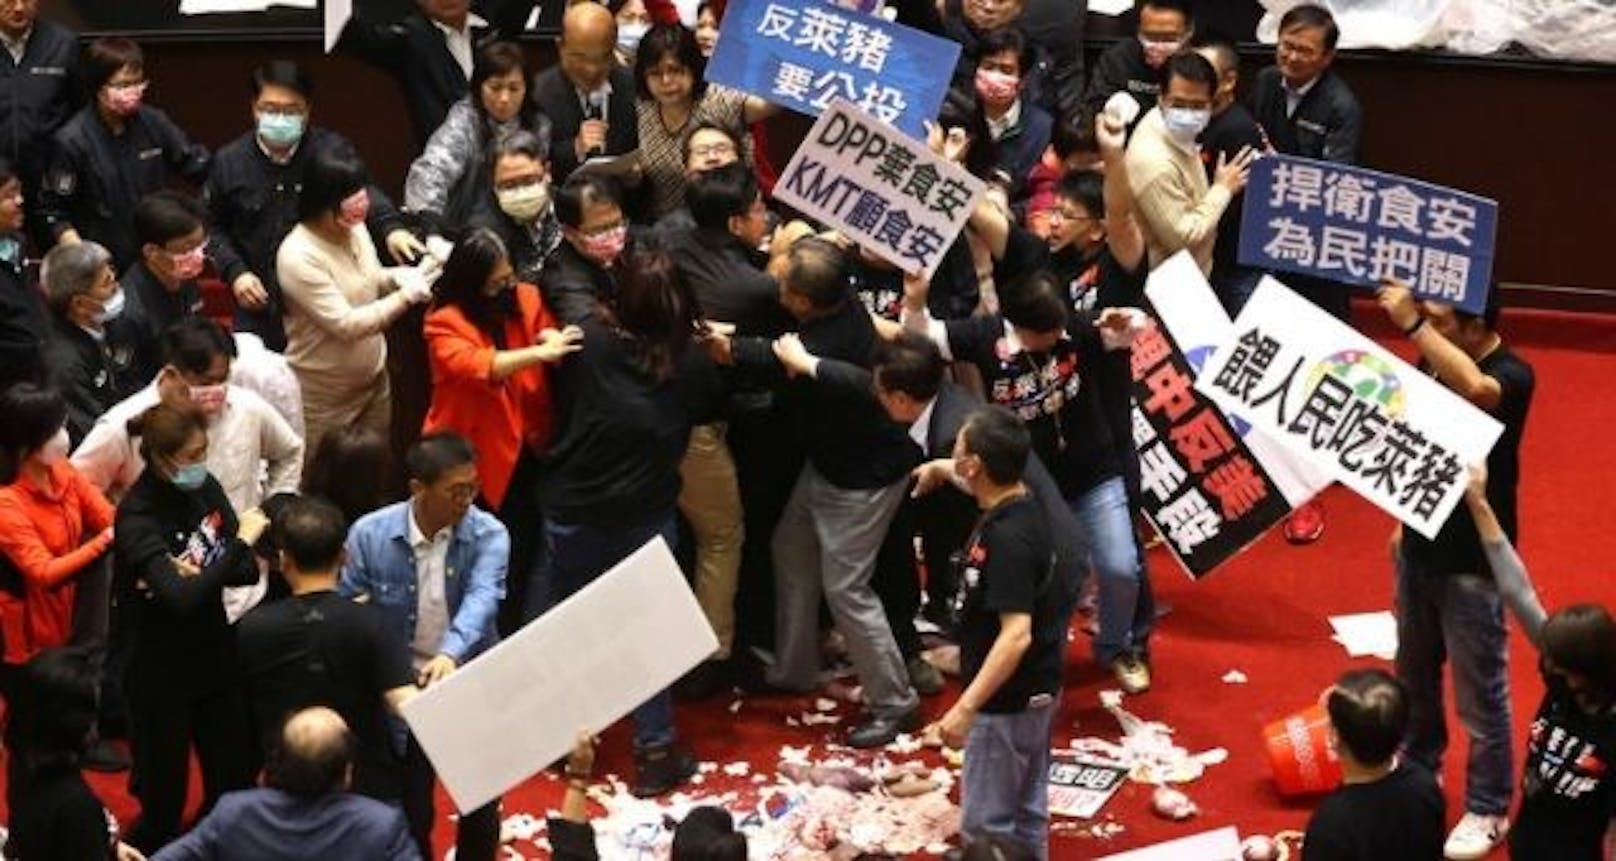 Abgeordnete der größten Oppositionspartei Kuomintang (KMT) warfen aus Protest Schweineinnereien auf andere Parlamentarier. 